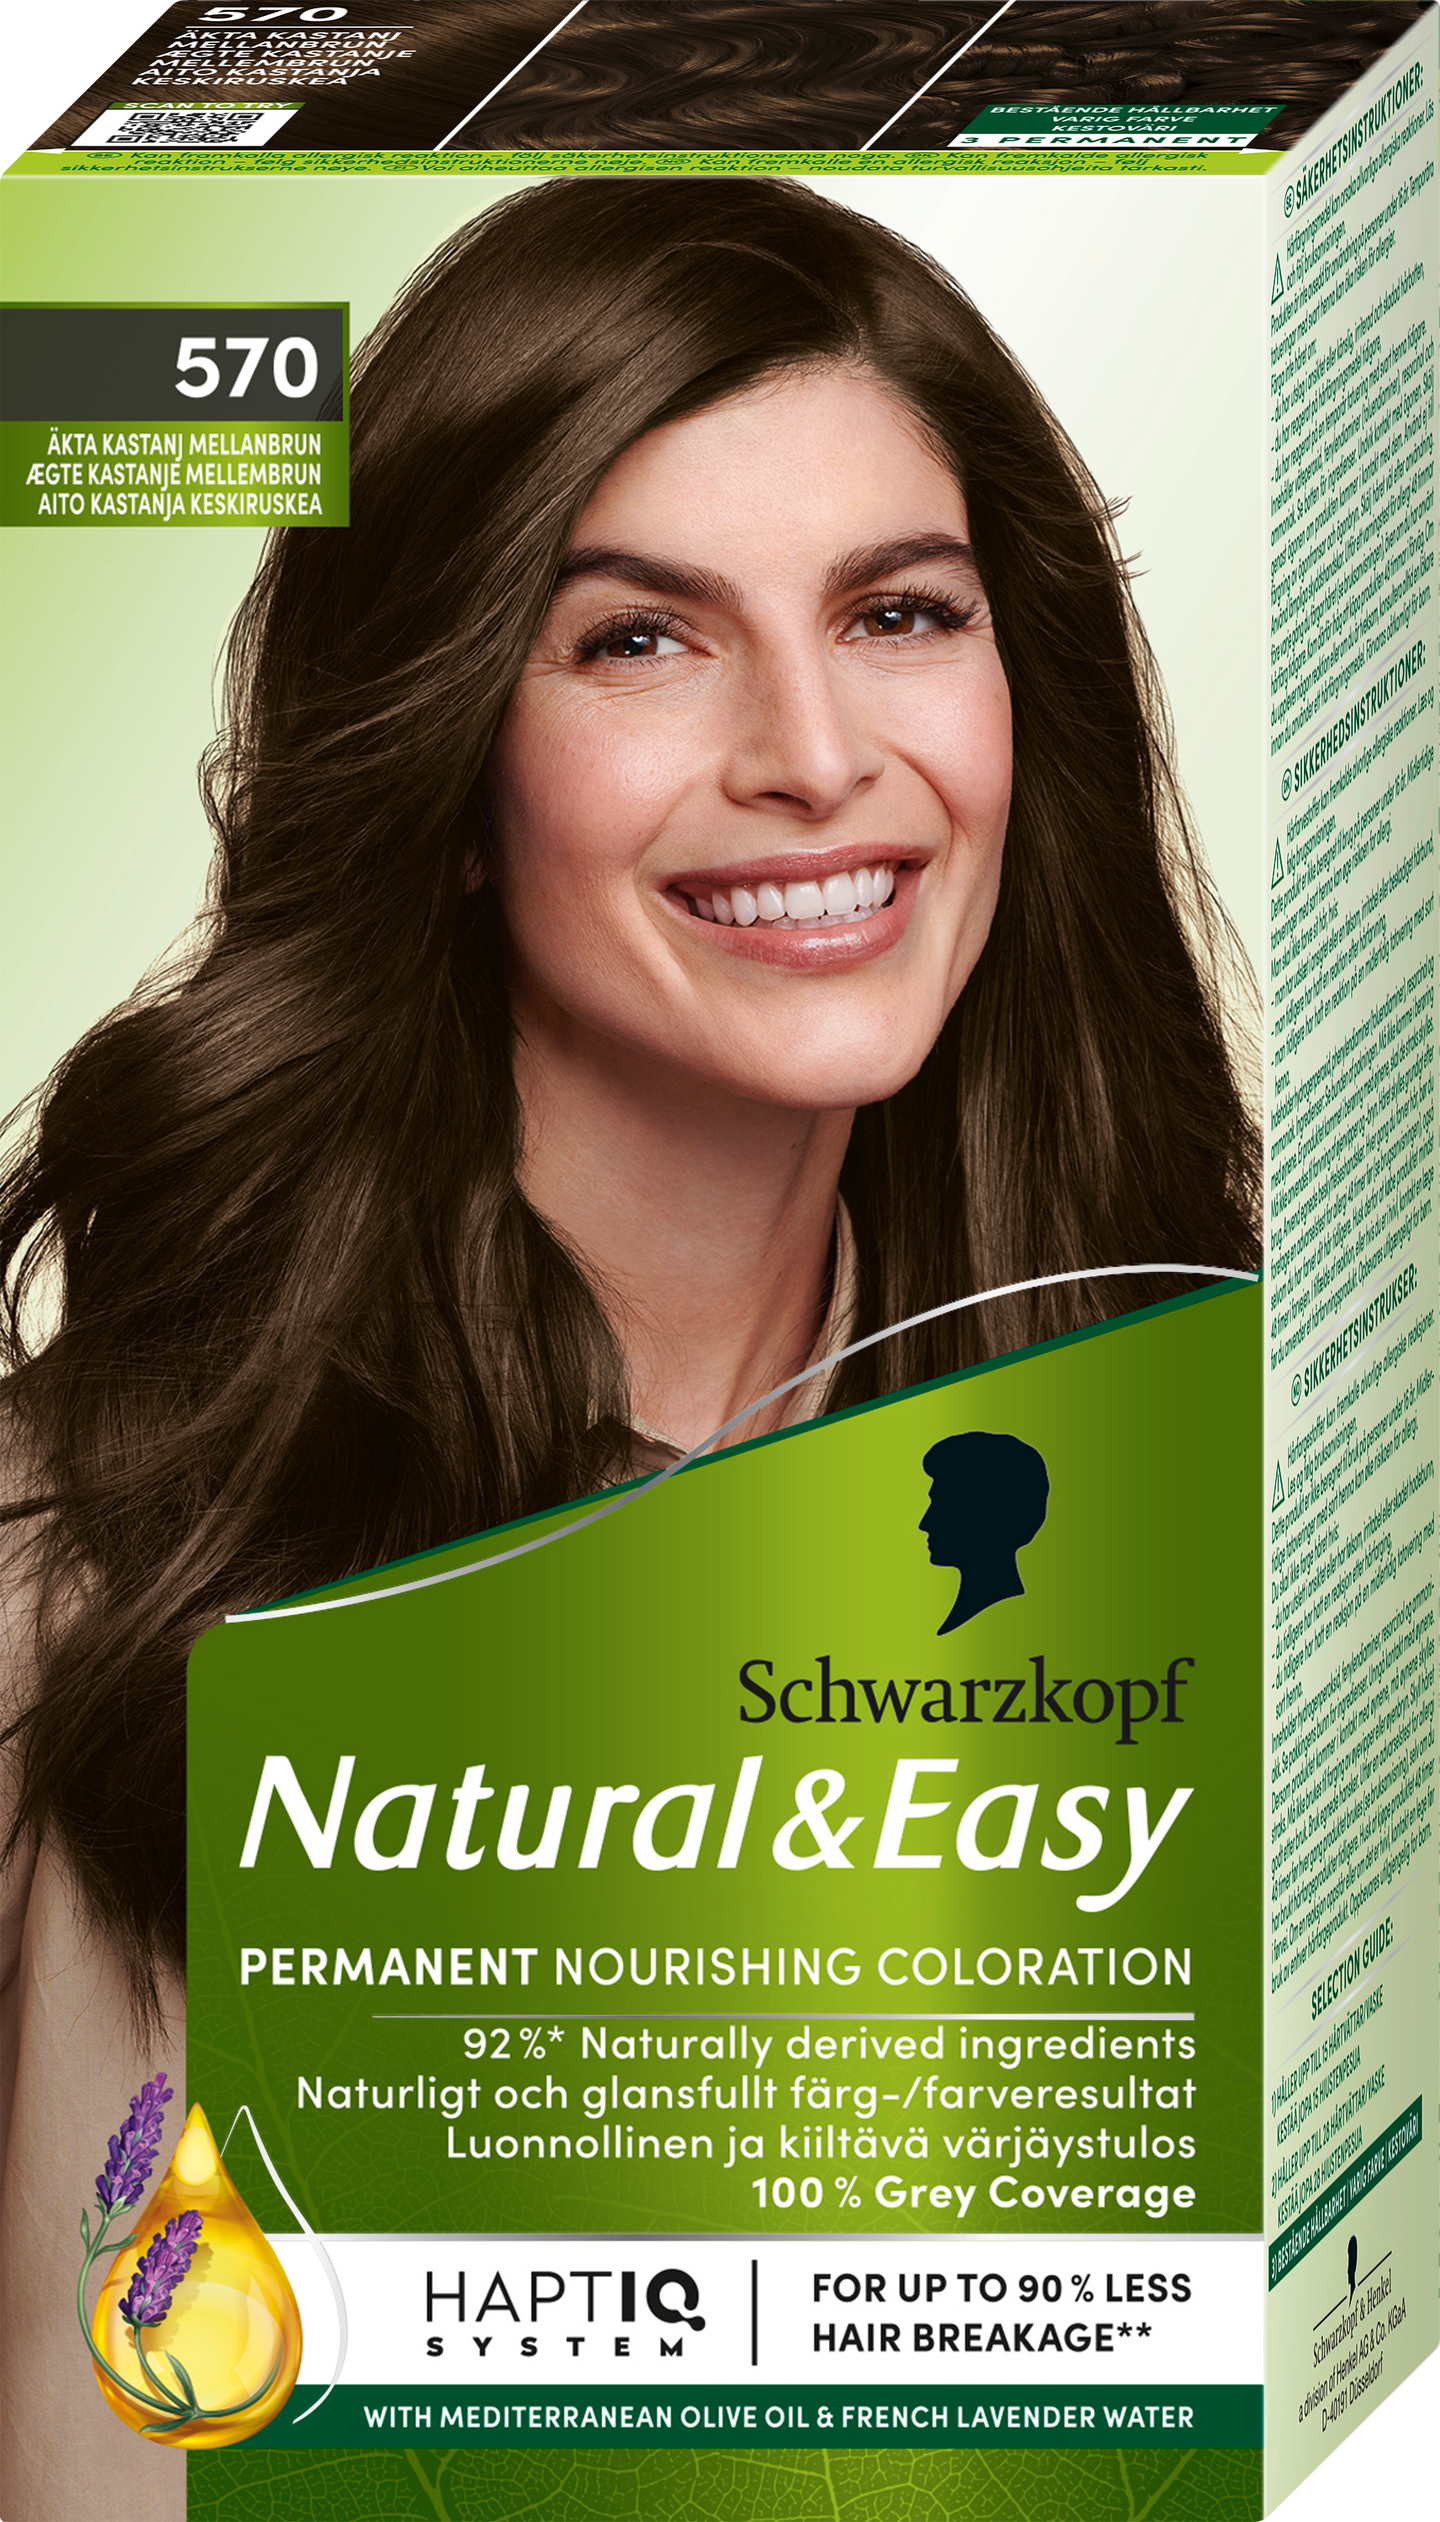 Schwarzkopf Natural & Easy hiusväri 570 Aito Kastanja Keskiruskea